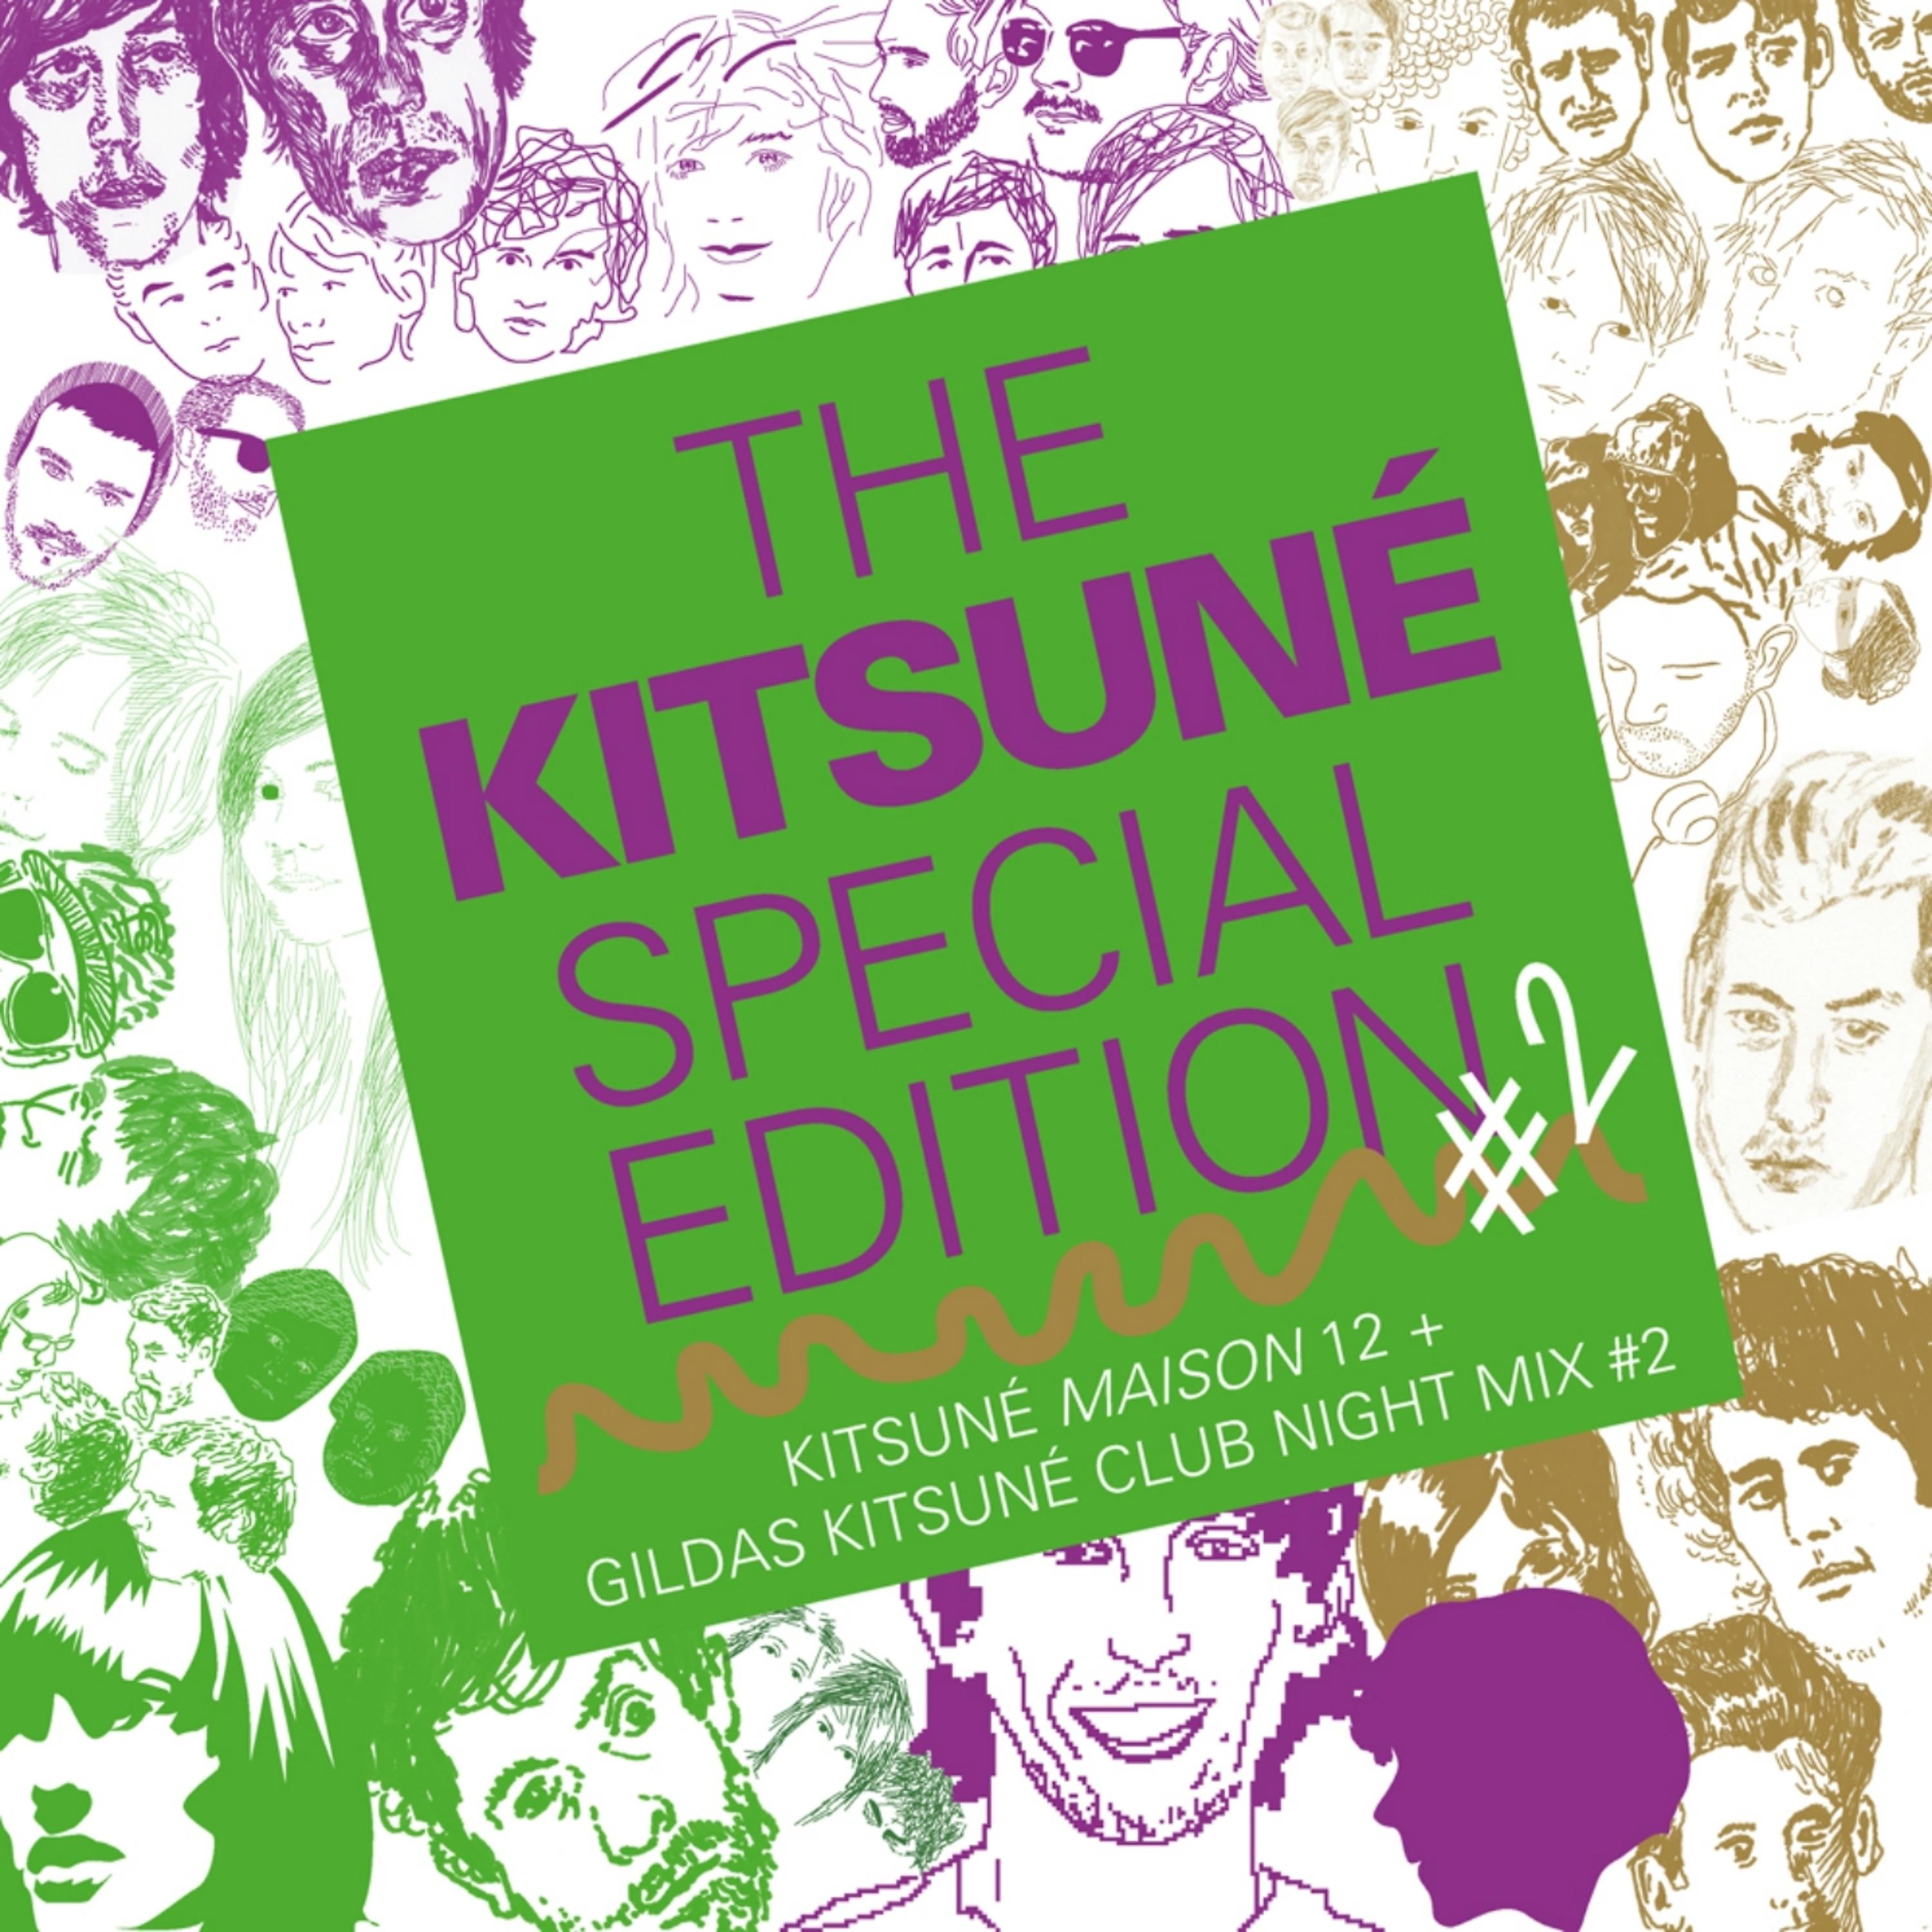 Постер альбома The Kitsuné Special Edition #2 (Kitsuné Maison 12 + Gildas Kitsuné Club Night Mix #2)